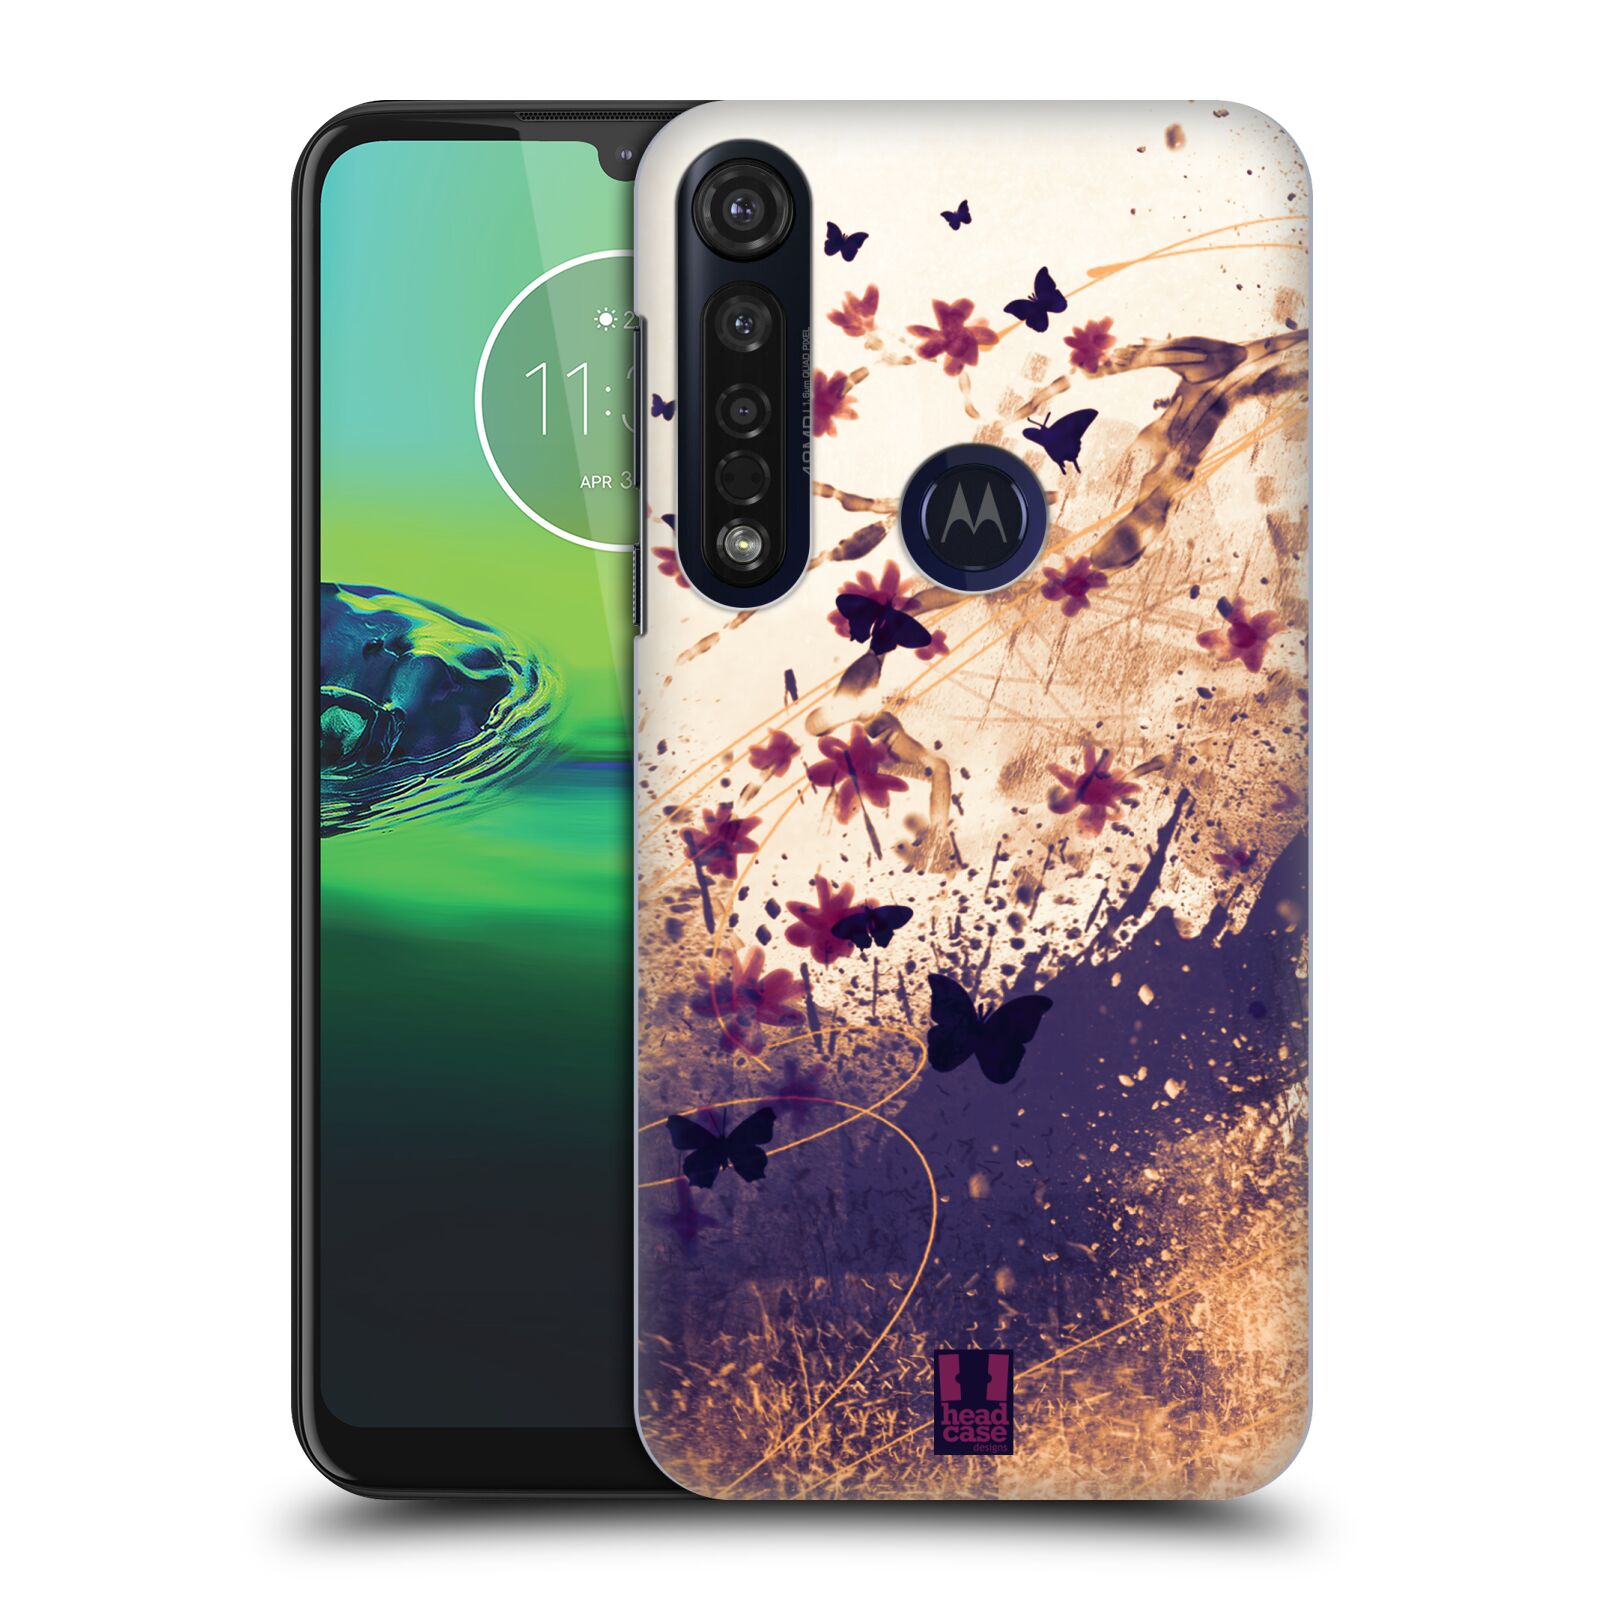 Pouzdro na mobil Motorola Moto G8 PLUS - HEAD CASE - vzor Kreslené barevné květiny KVĚTY A MOTÝLCI